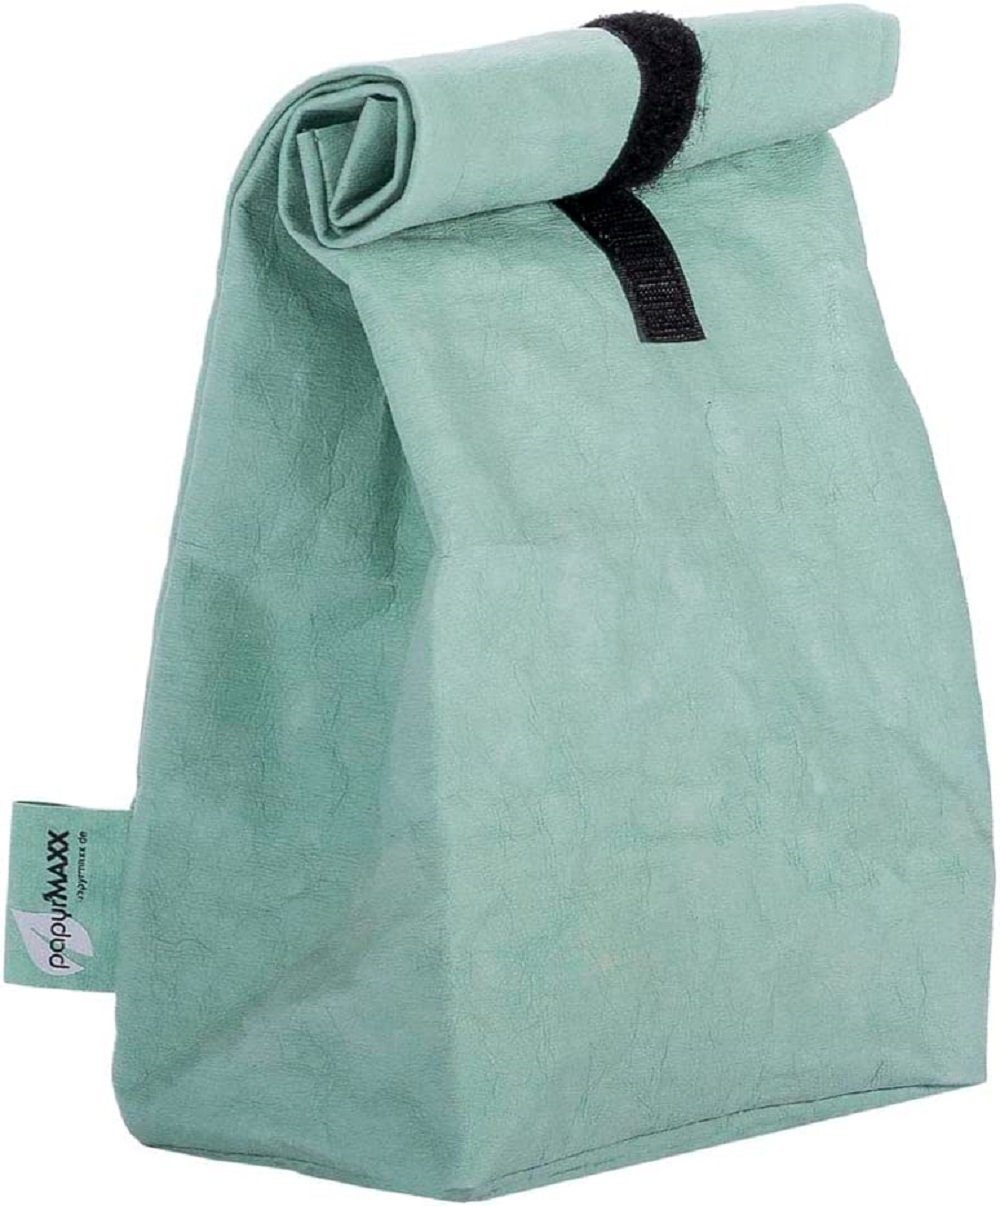 LK Trend & Style Lunchbox Rolltop-Lunchbag mit Klettverschluss, sieht aus wie Leder ist aber keins. mint | Lunchboxen